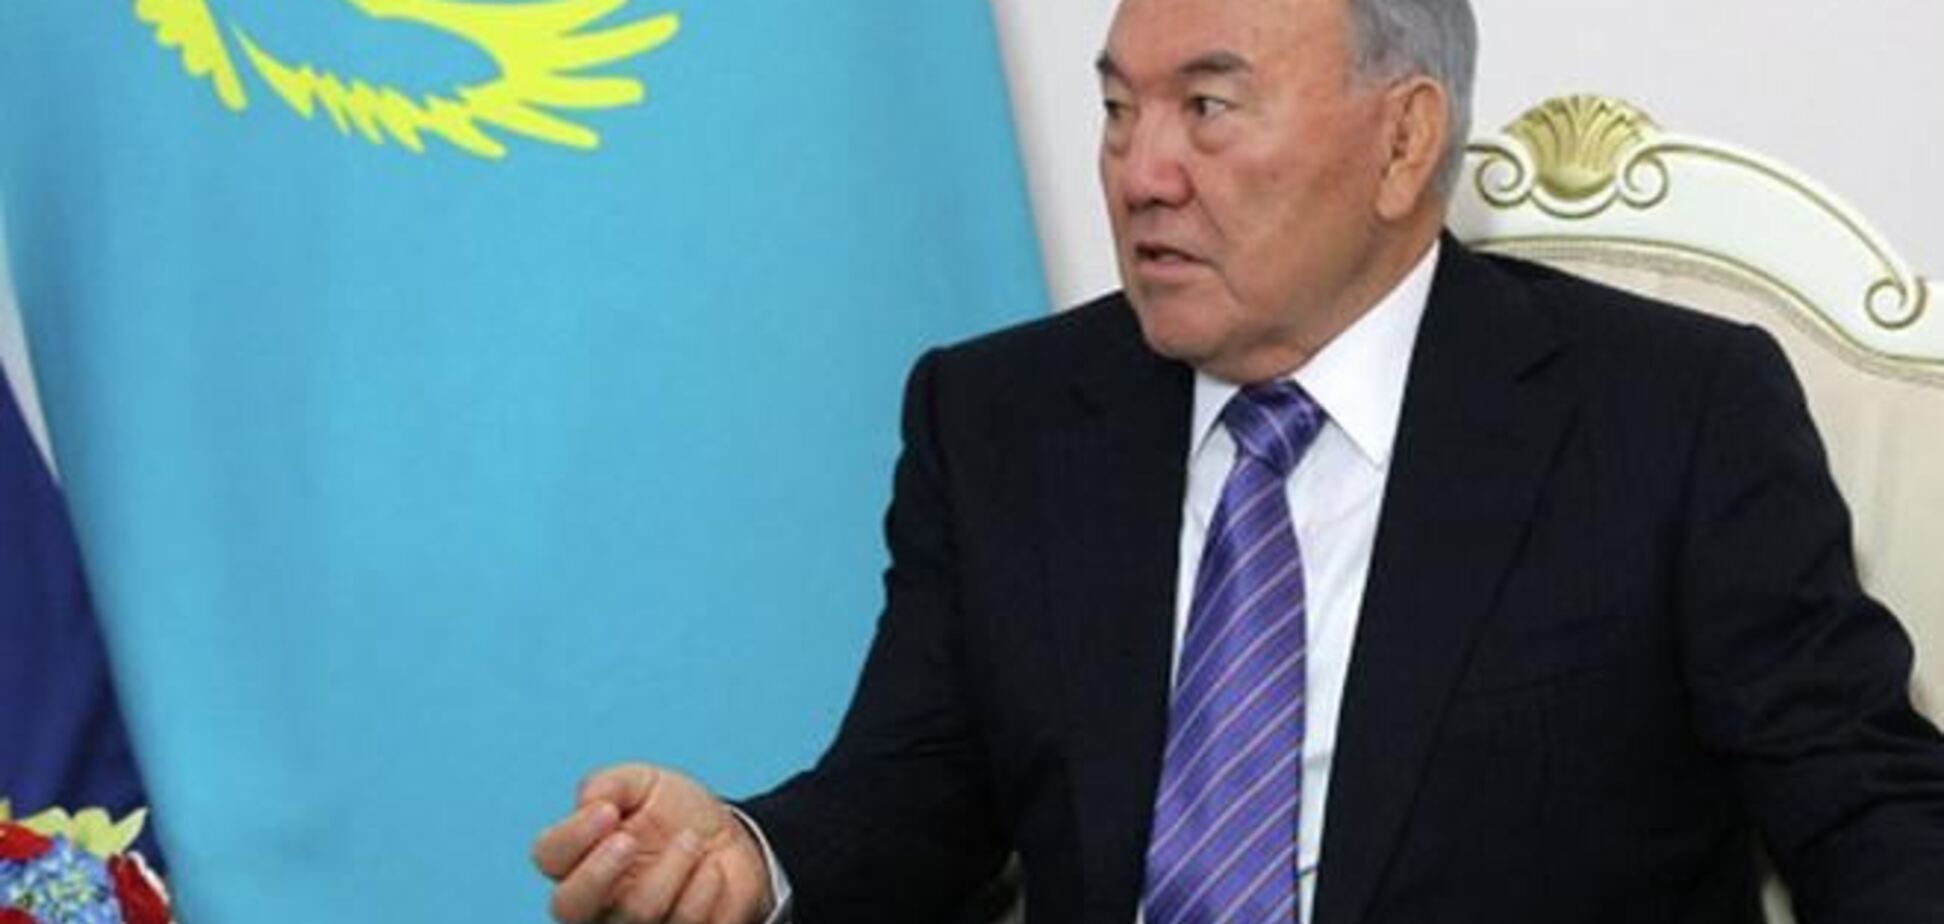 Українці Казахстану закликали Назарбаєва засудити агресію РФ в Криму